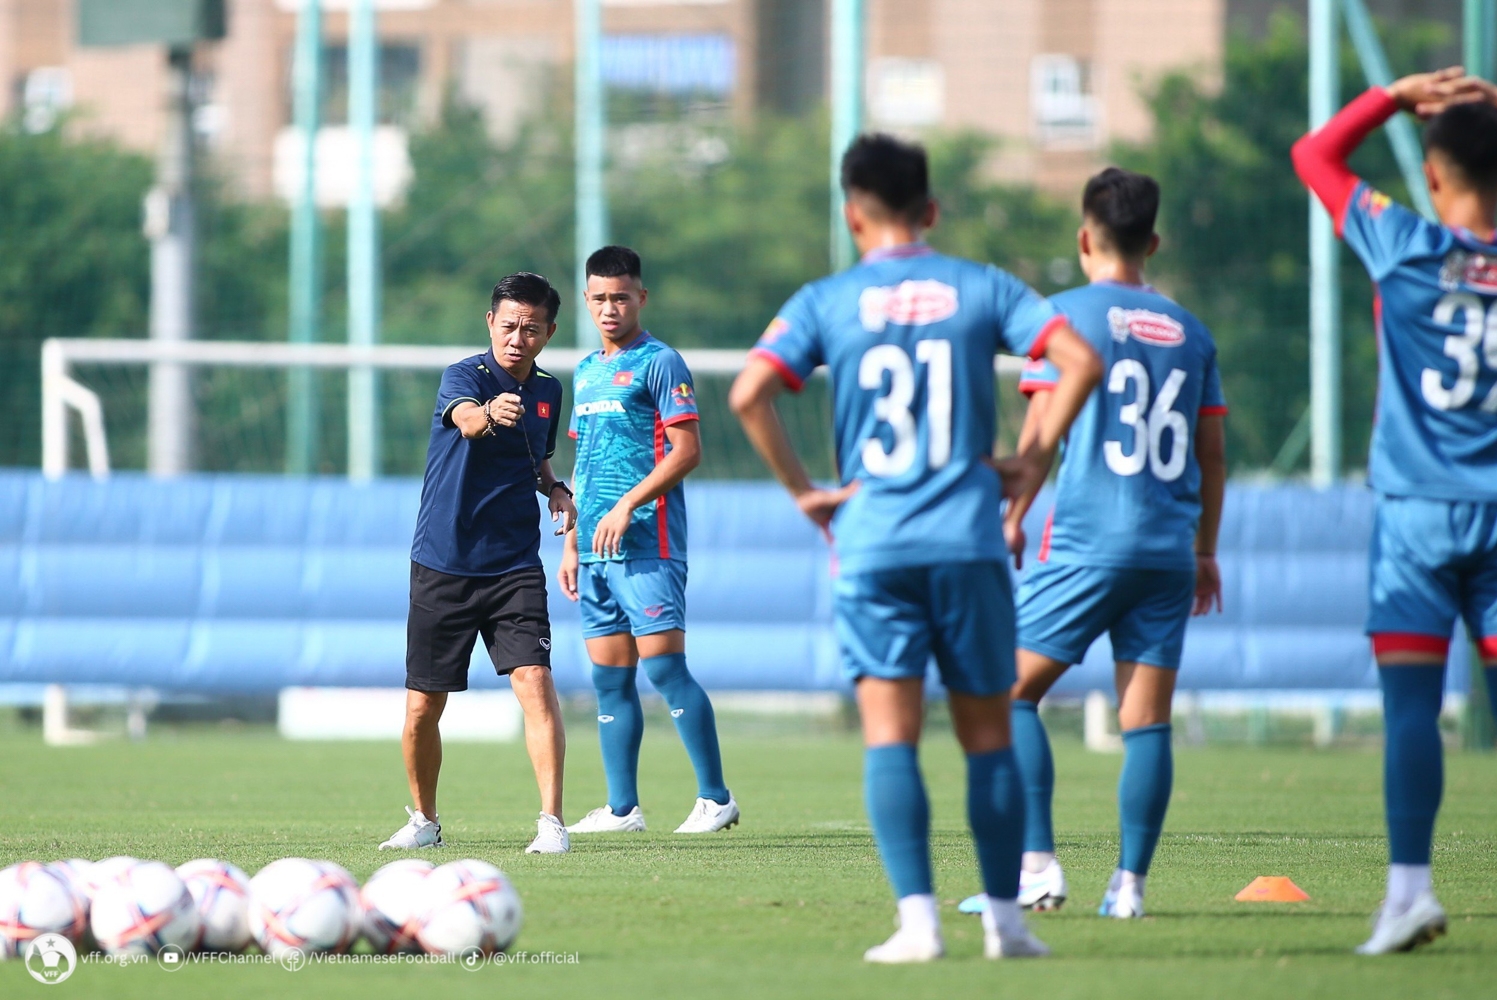 HLV Hoàng Anh Tuấn công bố danh sách cầu thủ U23 Việt Nam chuẩn bị cho VCK U23 châu Á 2024 - Bóng Đá